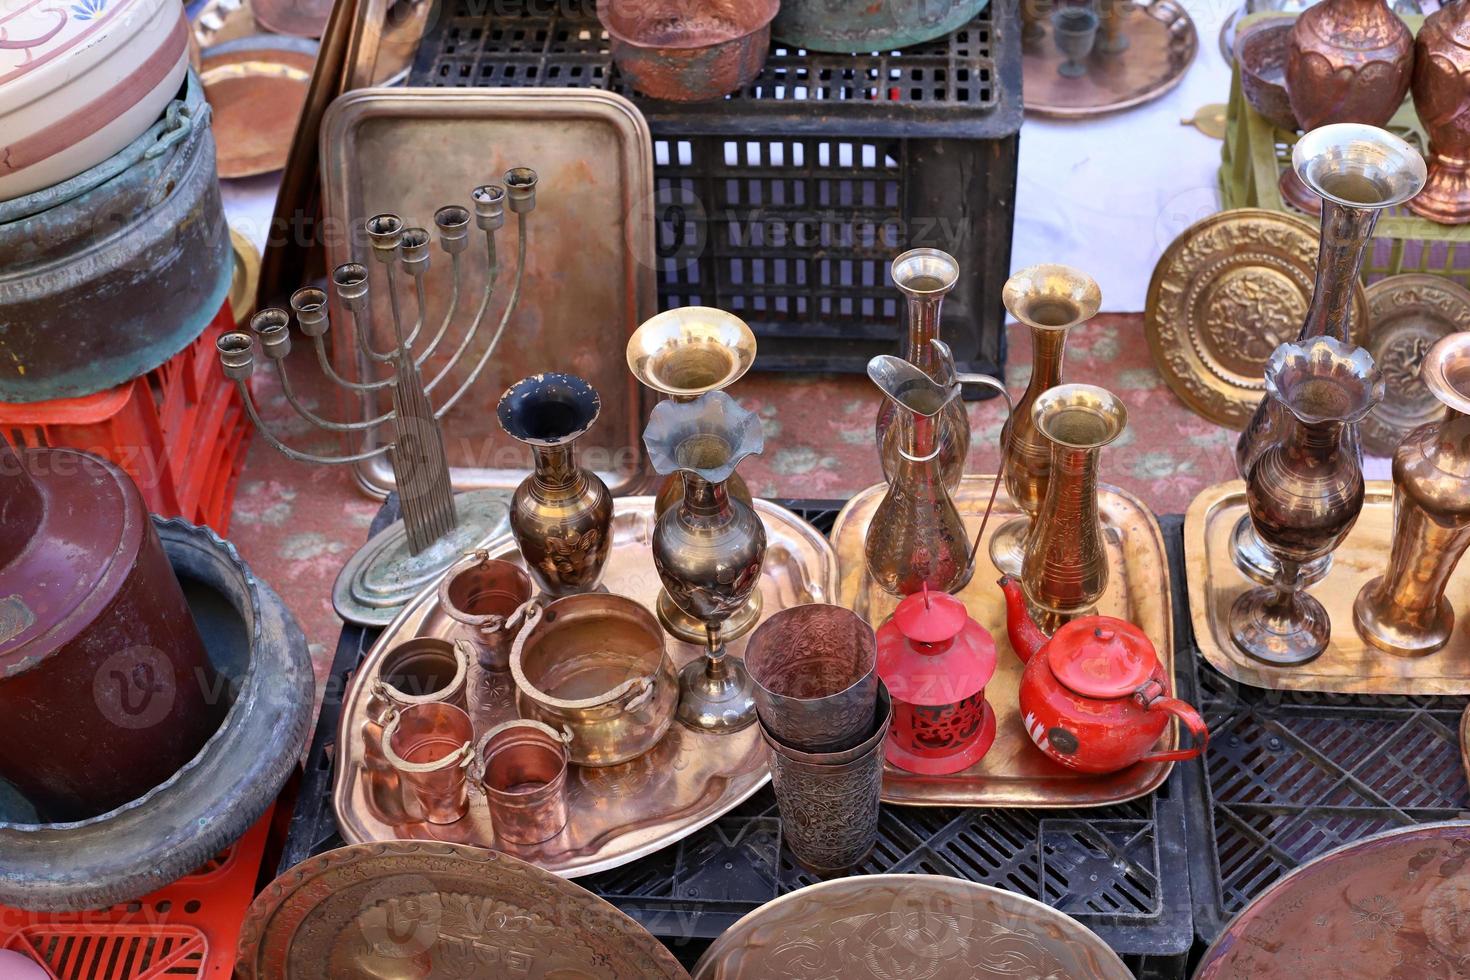 oude dingen en gereedschap worden verkocht op een vlooienmarkt in israël foto